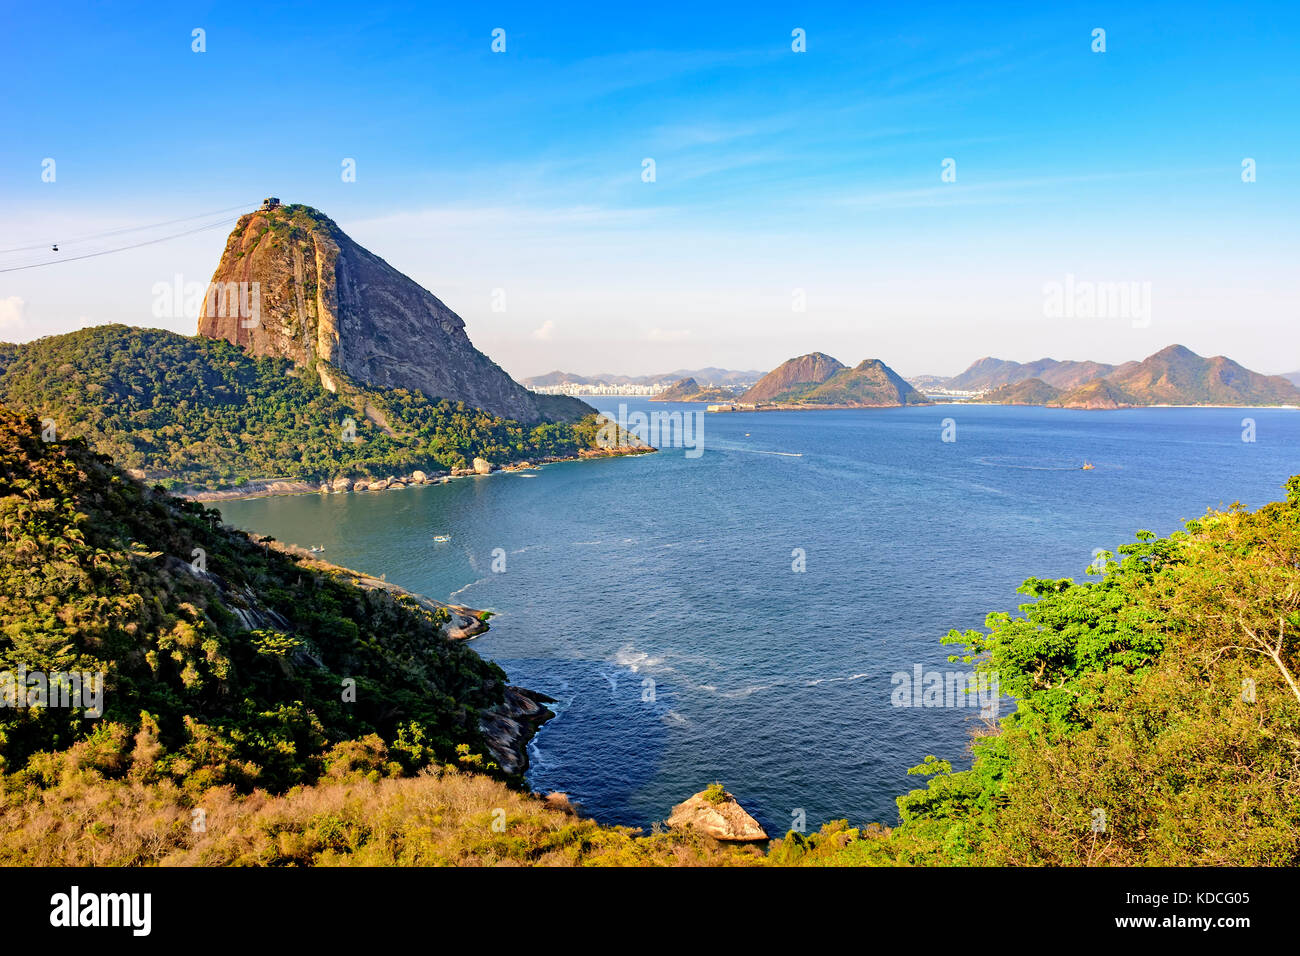 Blick auf den Zuckerhut Hill, Guanabara Bucht, das Meer, die Hügel und Berge von Rio de Janeiro mit der Stadt Niteroi im Hintergrund Stockfoto